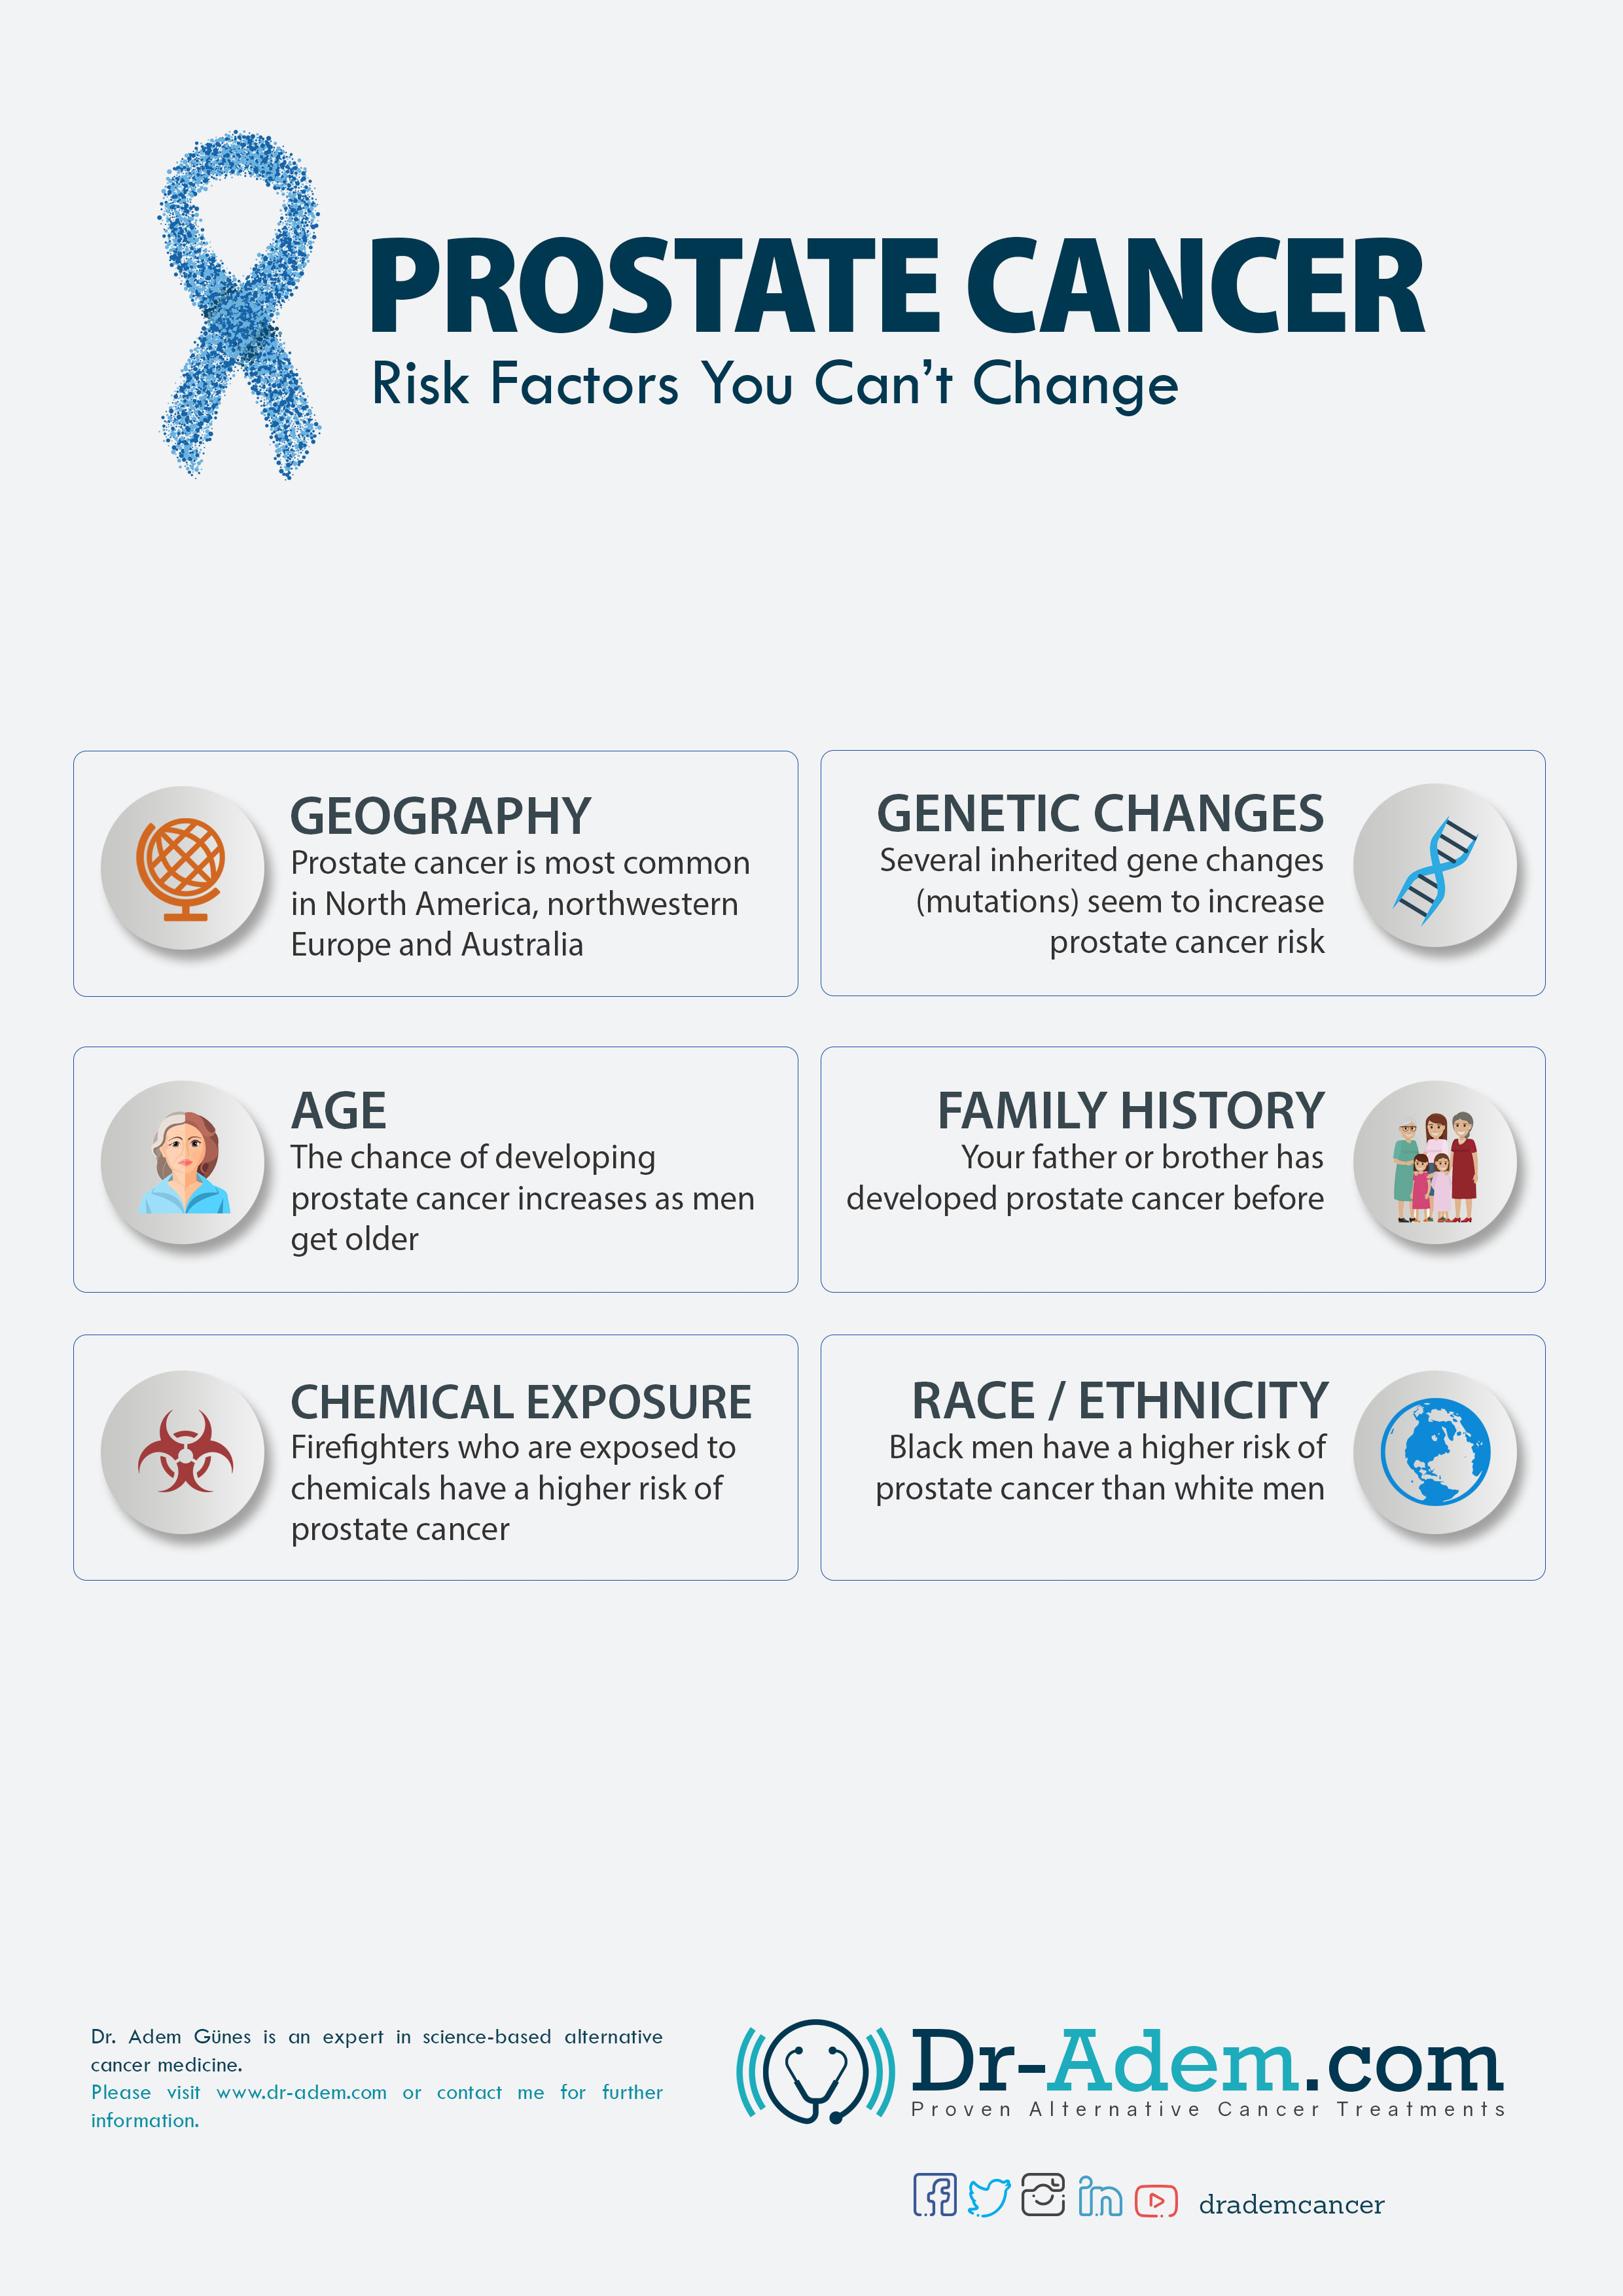 Major Risk Factors For Prostate Cancer